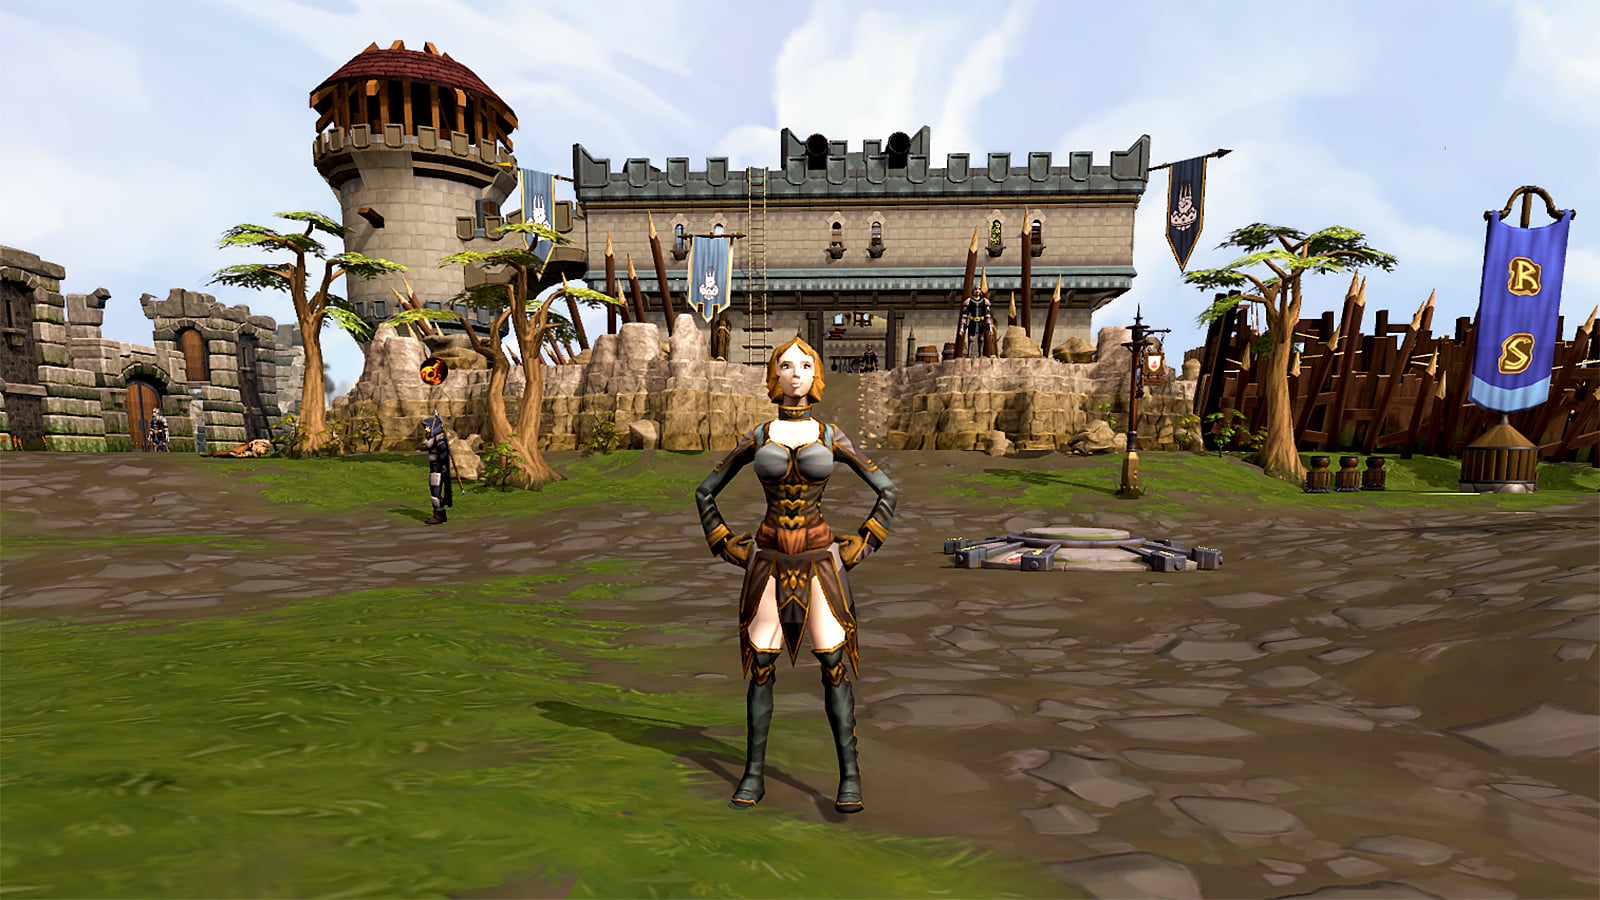 Ein Spielercharakter, der von einem Burg-Wahrzeichen in der freien MMORPG RuneScape posiert